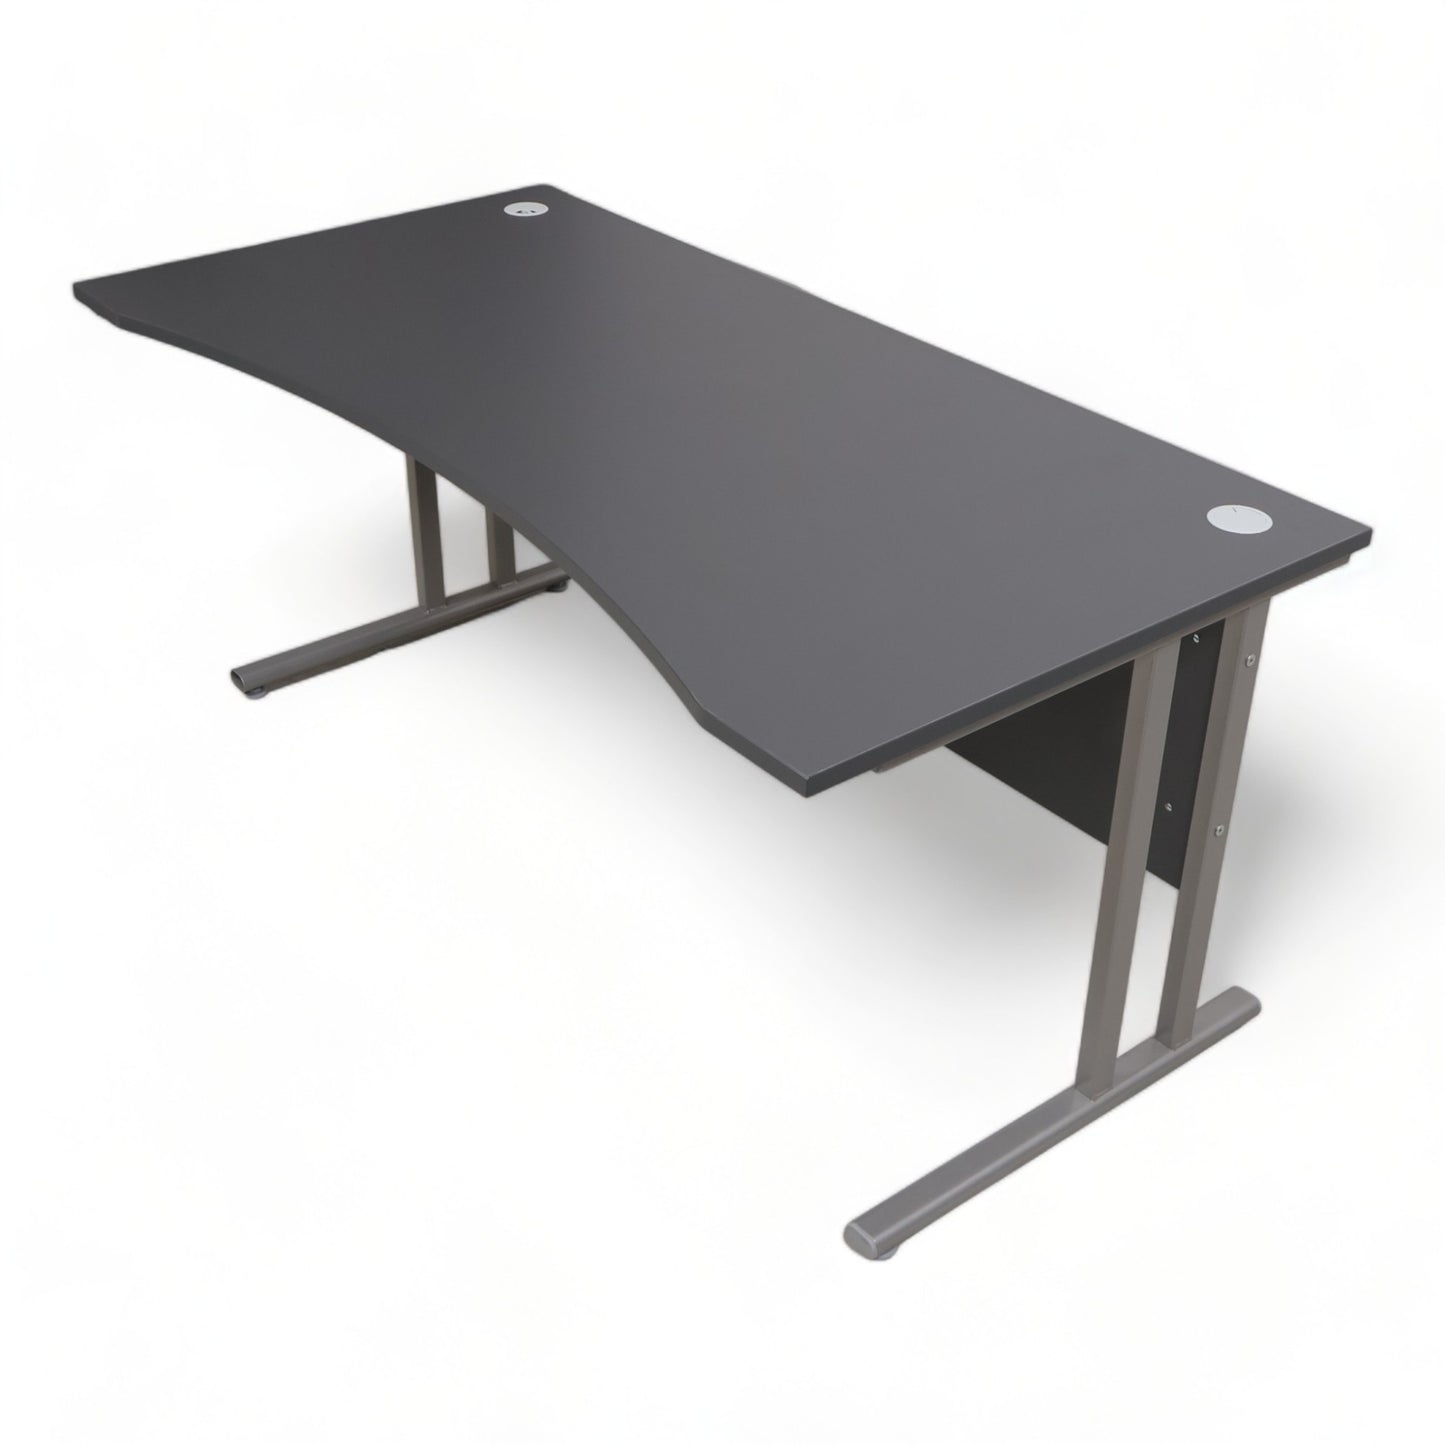 Kvalitetssikret | Flexus skrivebord med magebue fra AJ produkter